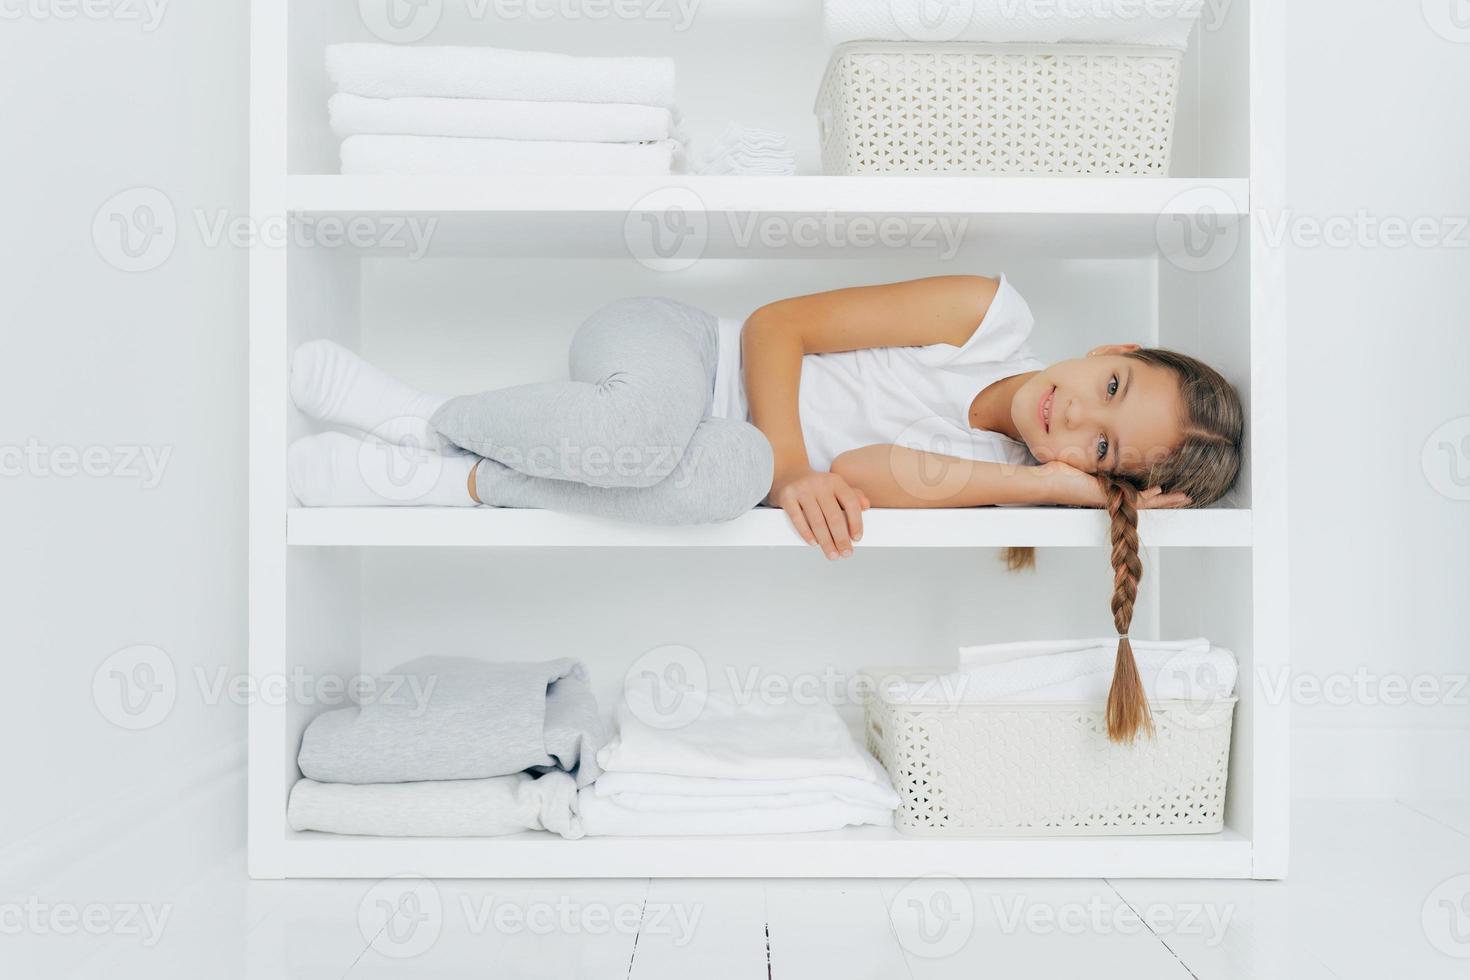 photo horizontale d'une fille reposante avec une queue de cochon posée sur une étagère de console blanche, vêtue de vêtements décontractés, entourée de piles de linge plié, d'un bassin de linge frais, se repose après avoir aidé sa mère